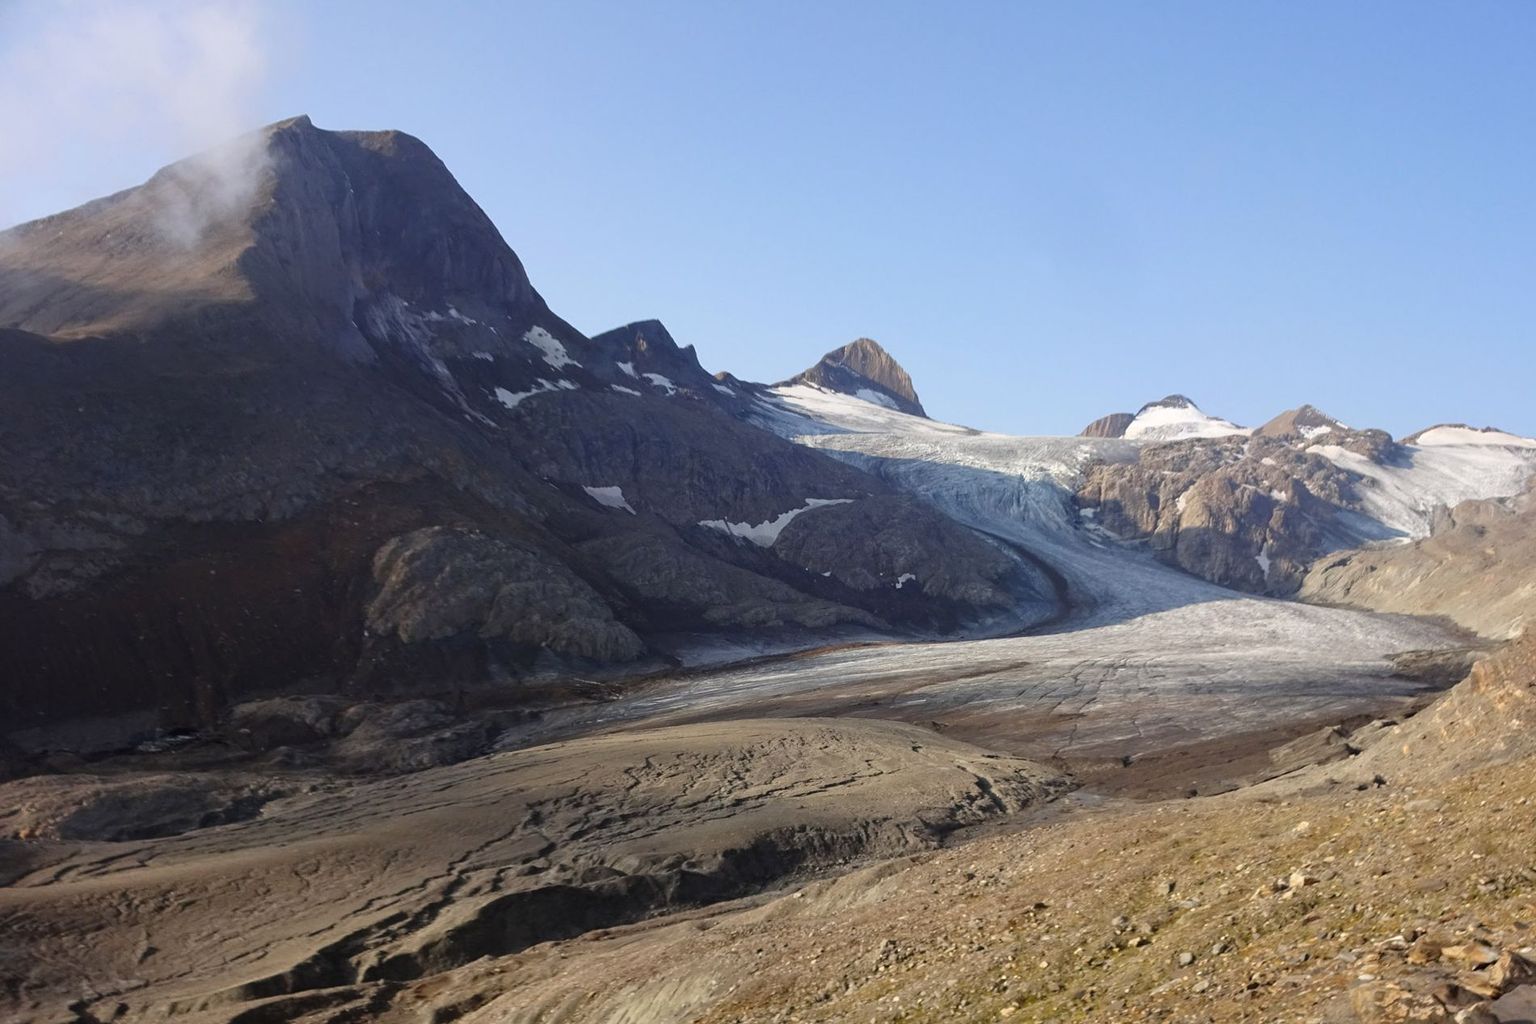 Depuis des années, le glacier de Gries (VS) perd de sa masse plus rapidement que presque tous les autres glaciers de Suisse. Sa langue est devenue fine et sale, ce qui accélère encore la fonte.